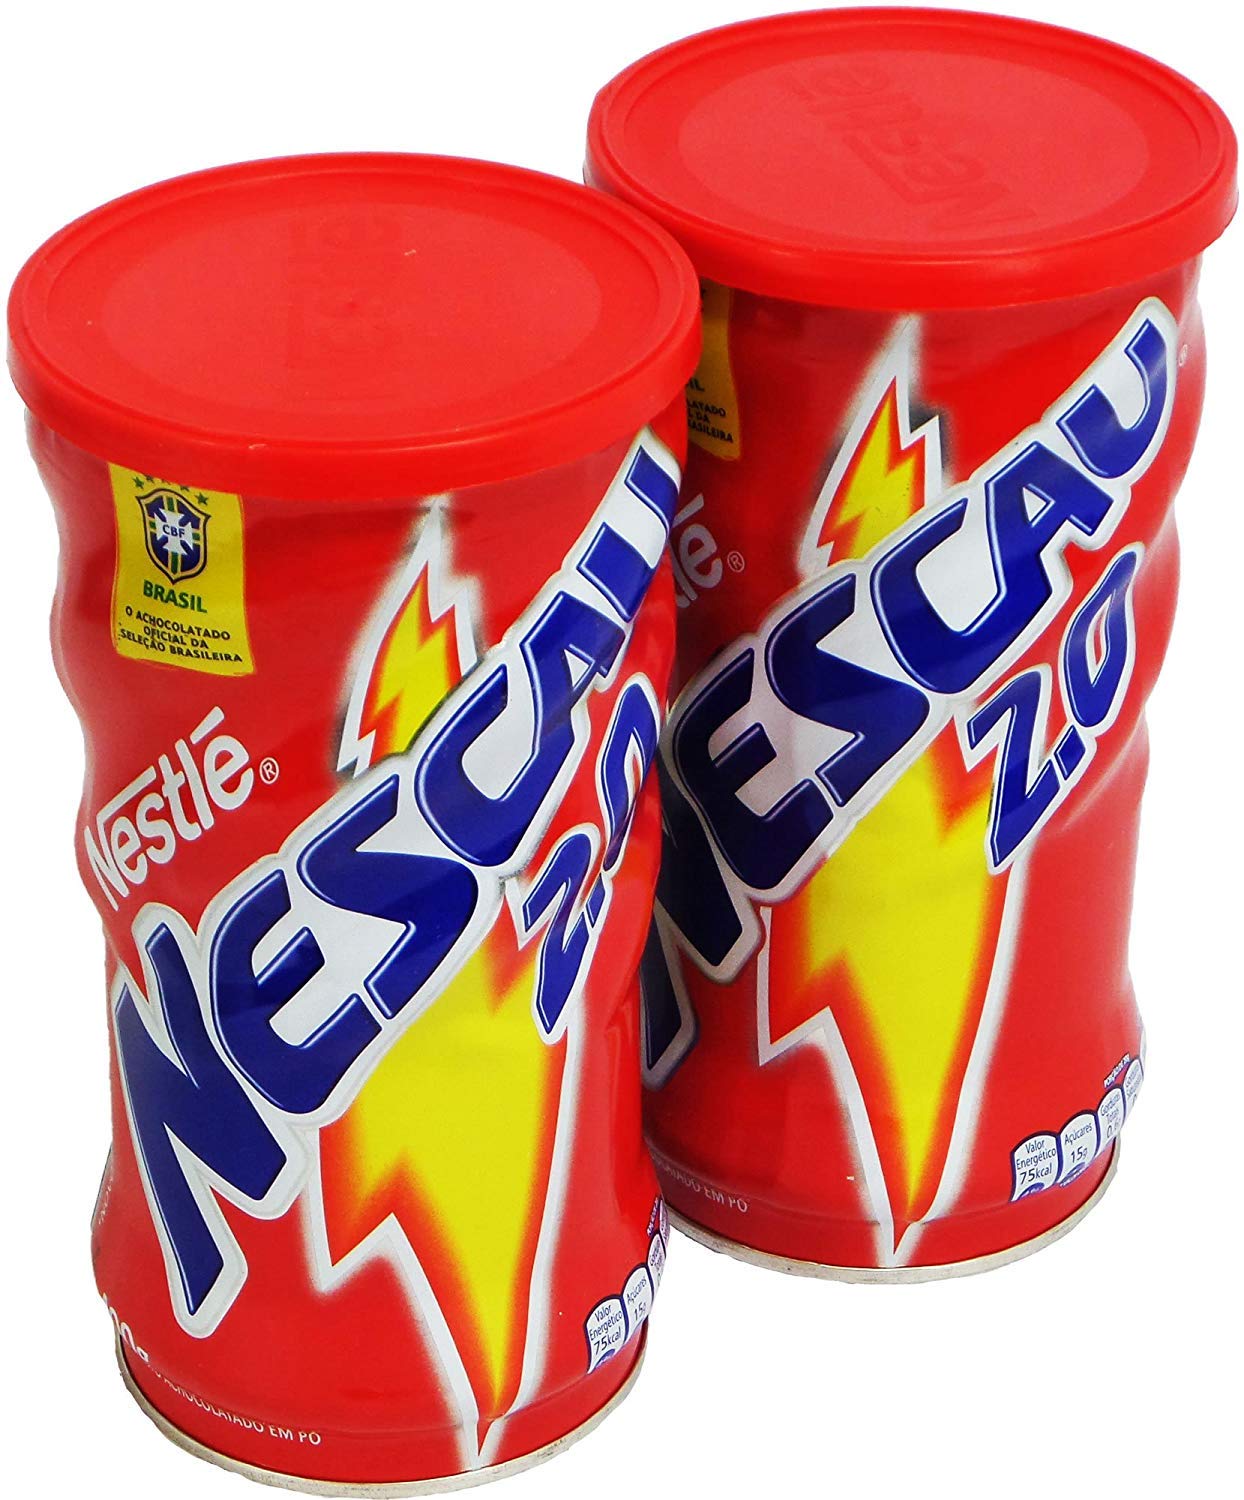 Nestlé Nescau Achocolatado em Pó 400 g | Chocolate Powder 14.1oz (Pack of 02) - image 2 of 3